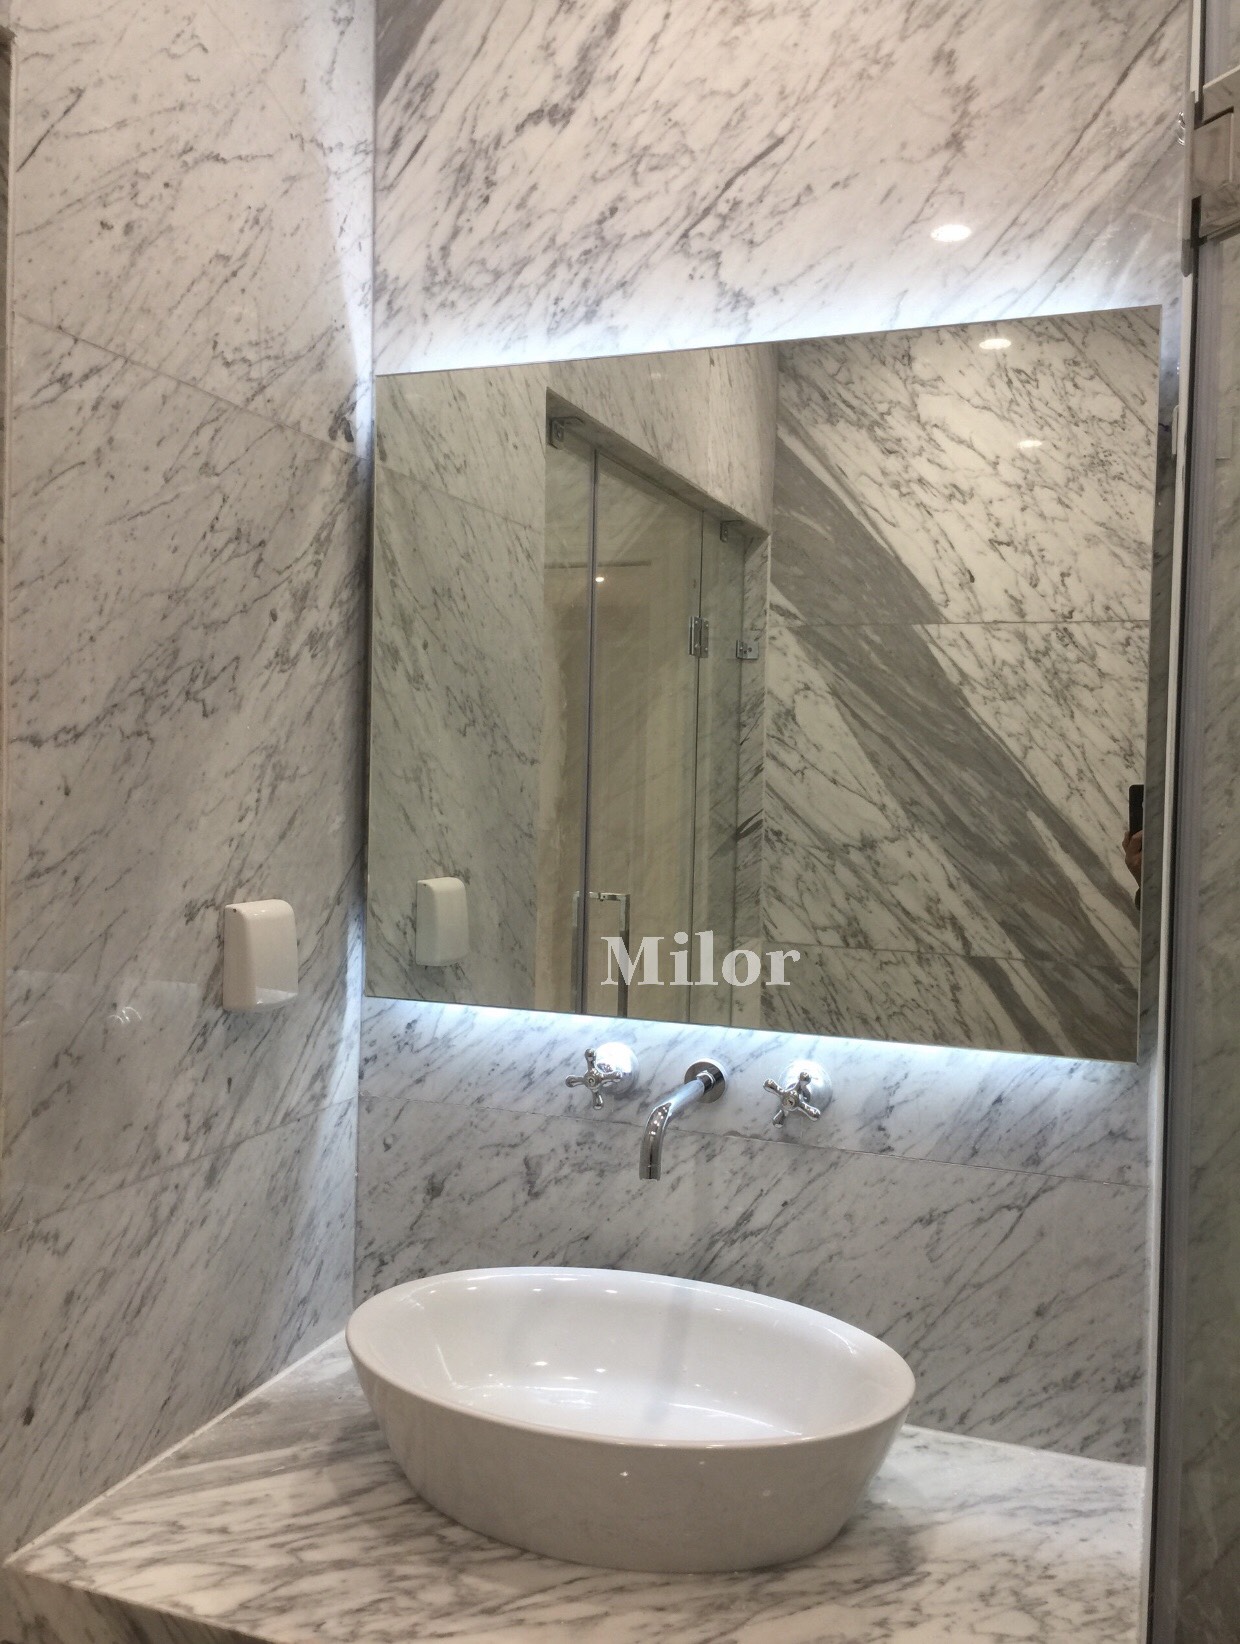 Gương đèn led trắng giúp tăng cường sự rọi sáng cho phòng tắm và tạo một không gian tràn đầy năng lượng. Đèn led trắng cũng làm cho gương trở nên lộng lẫy hơn, tạo nên sự sang trọng cho phòng tắm.